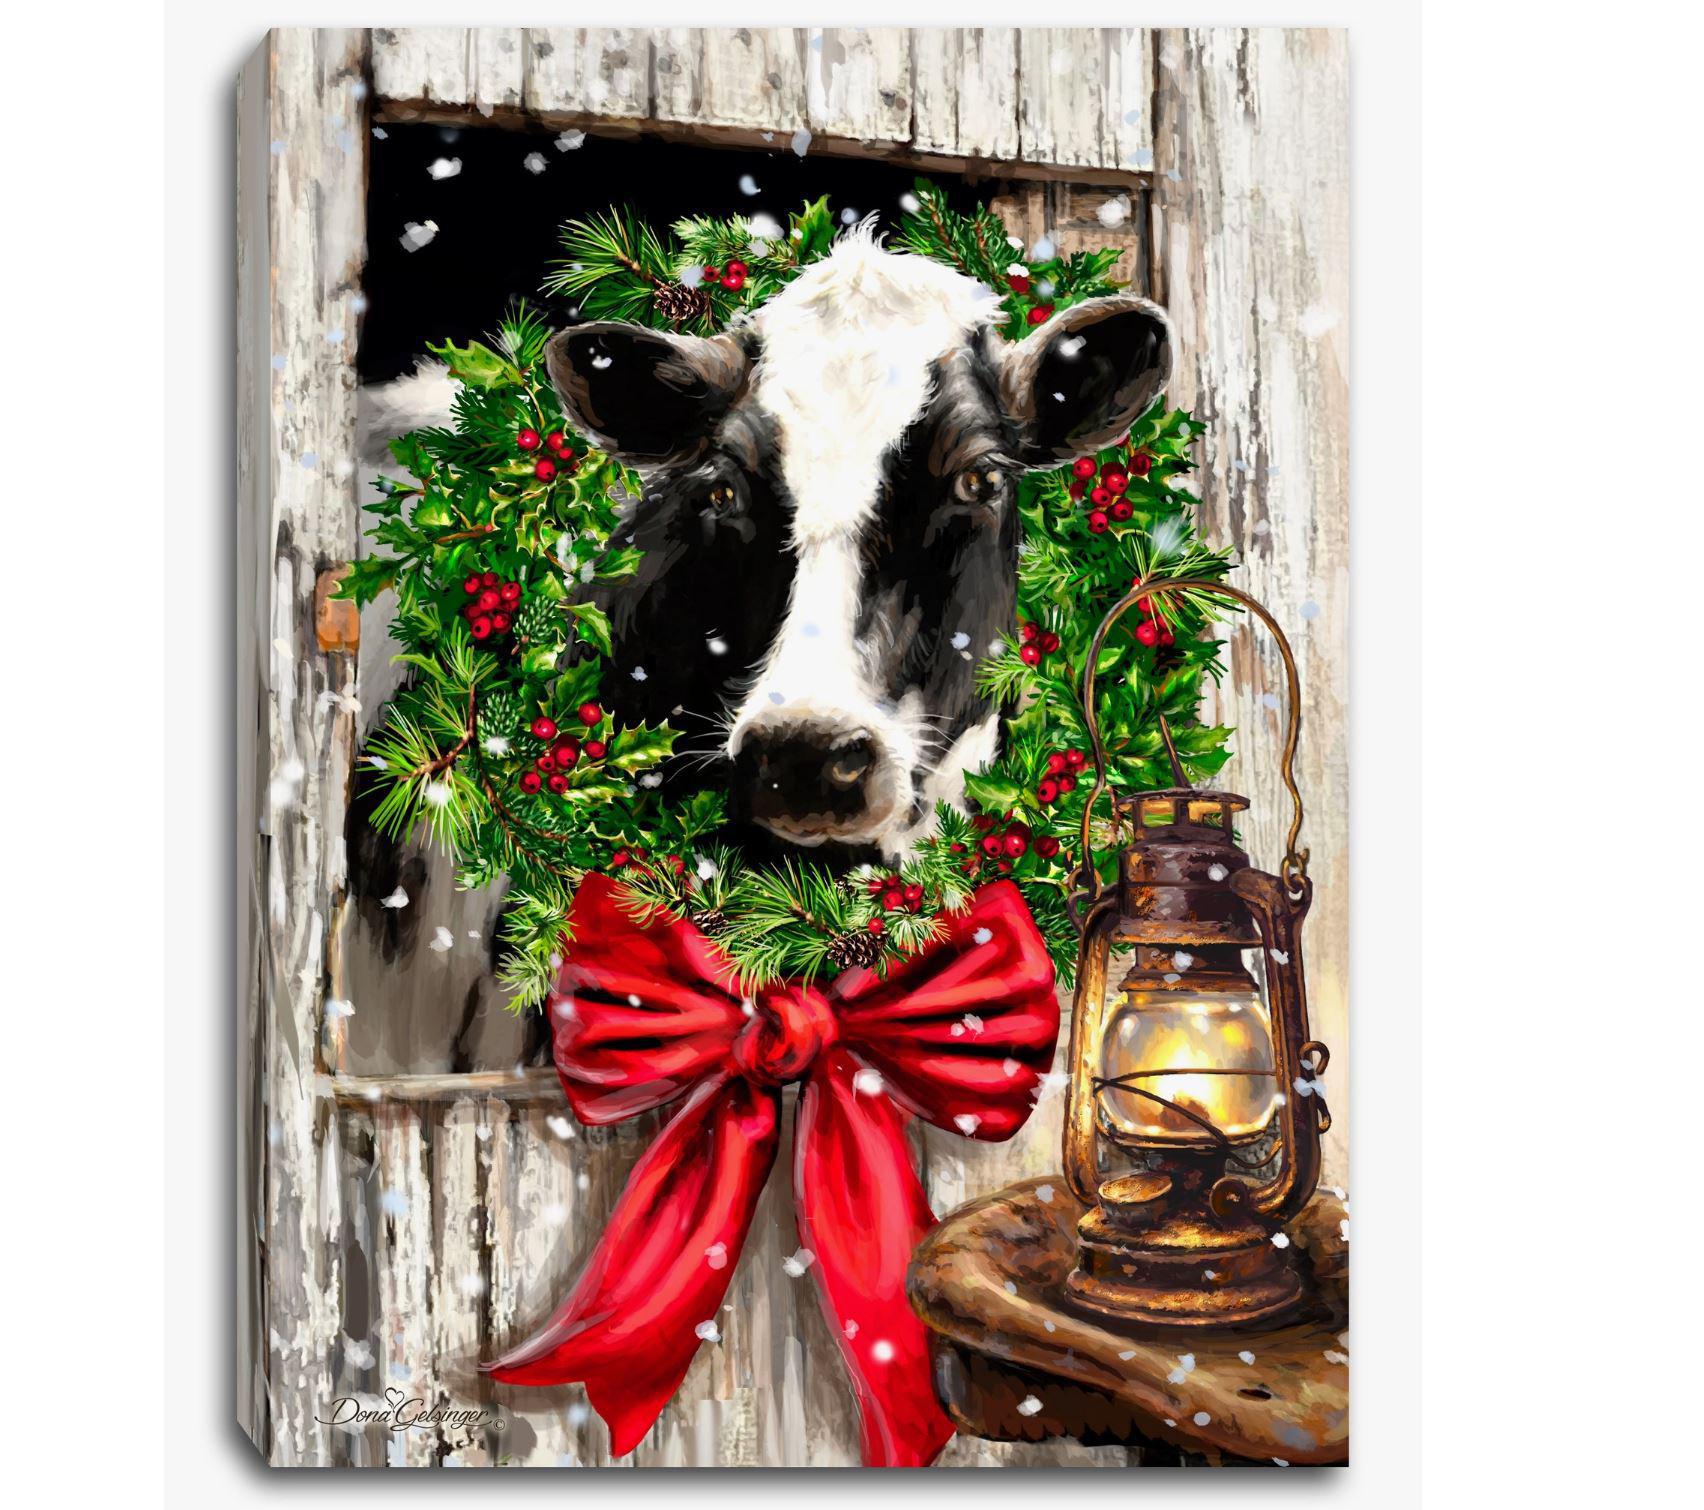 Lighted Tabletop Canvas | Christmas On the Farm